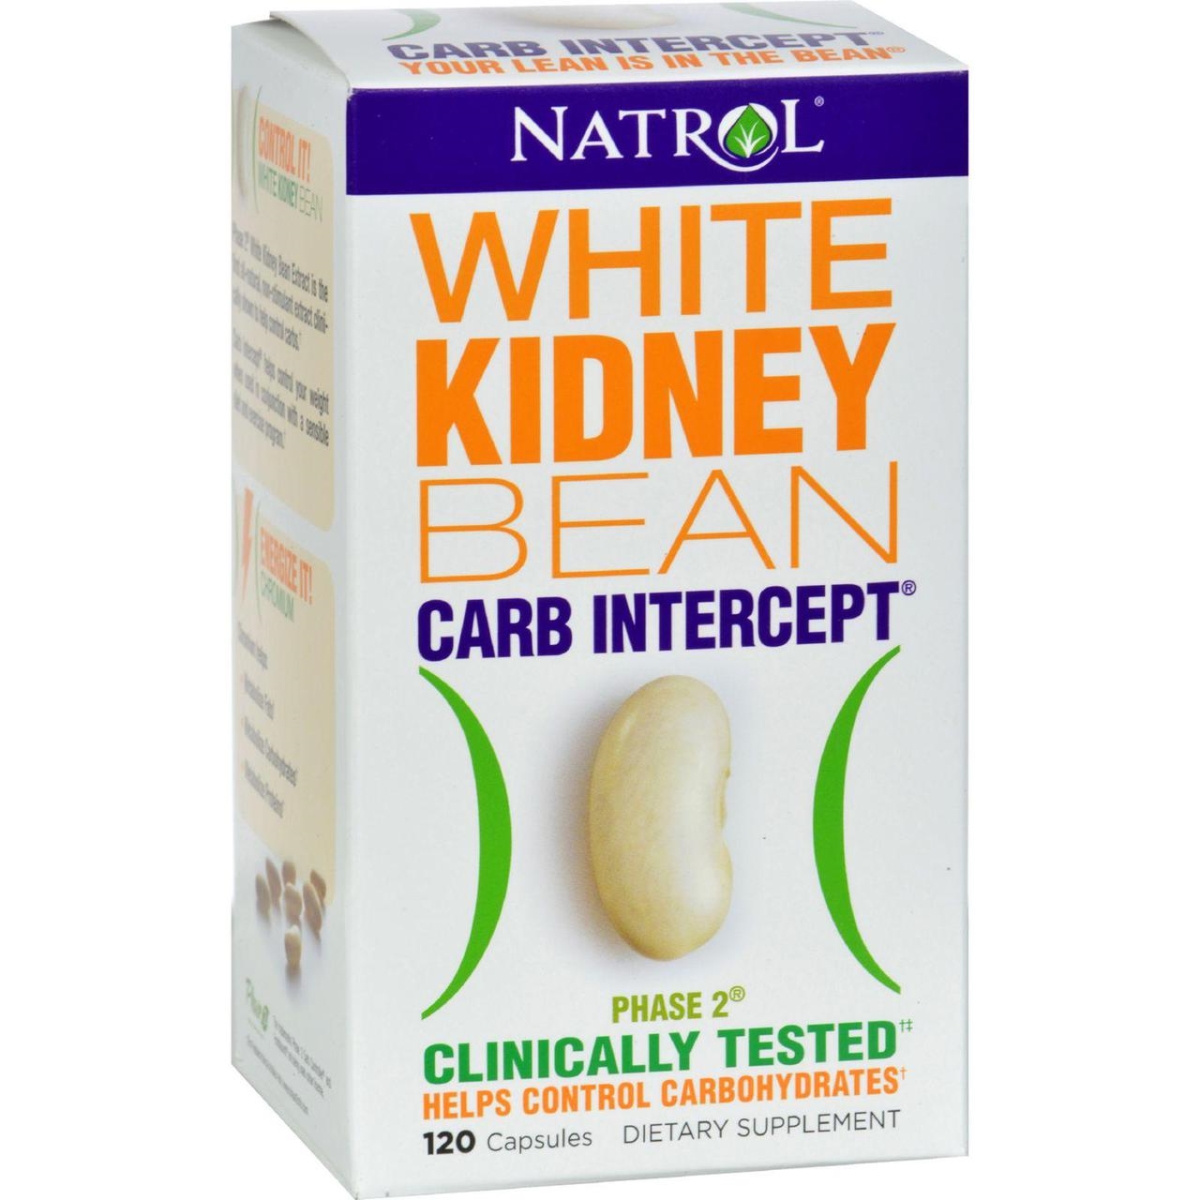 Hg0516120 White Kidney Bean Carb Intercept - 120 Capsules